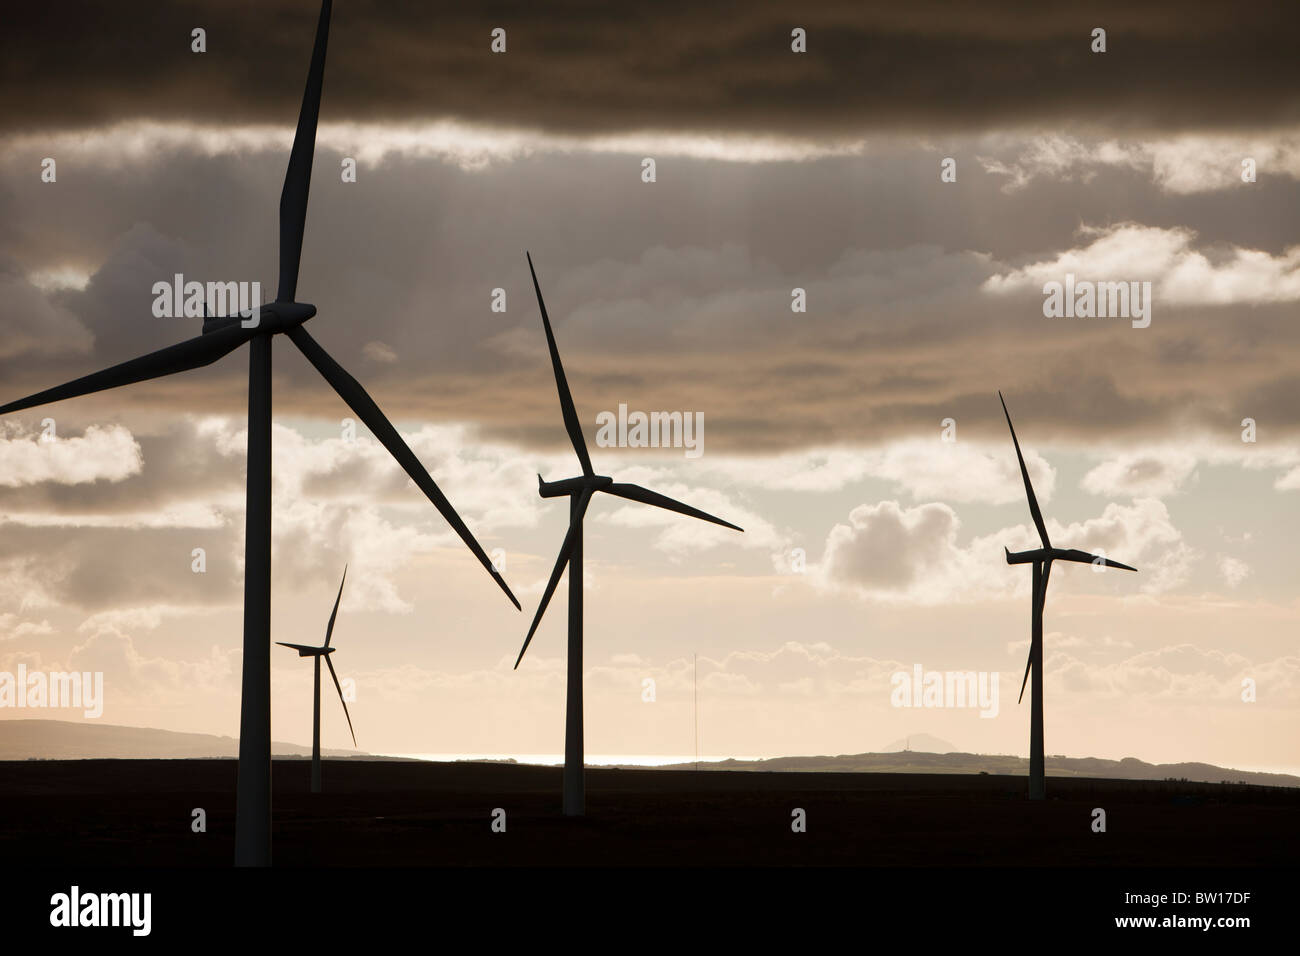 Duskover Whitelee wind farm su Eaglesham Moor appena a sud di Glasgow in Scozia, Regno Unito, è il più grande d'Europa onshore wind farm. Foto Stock